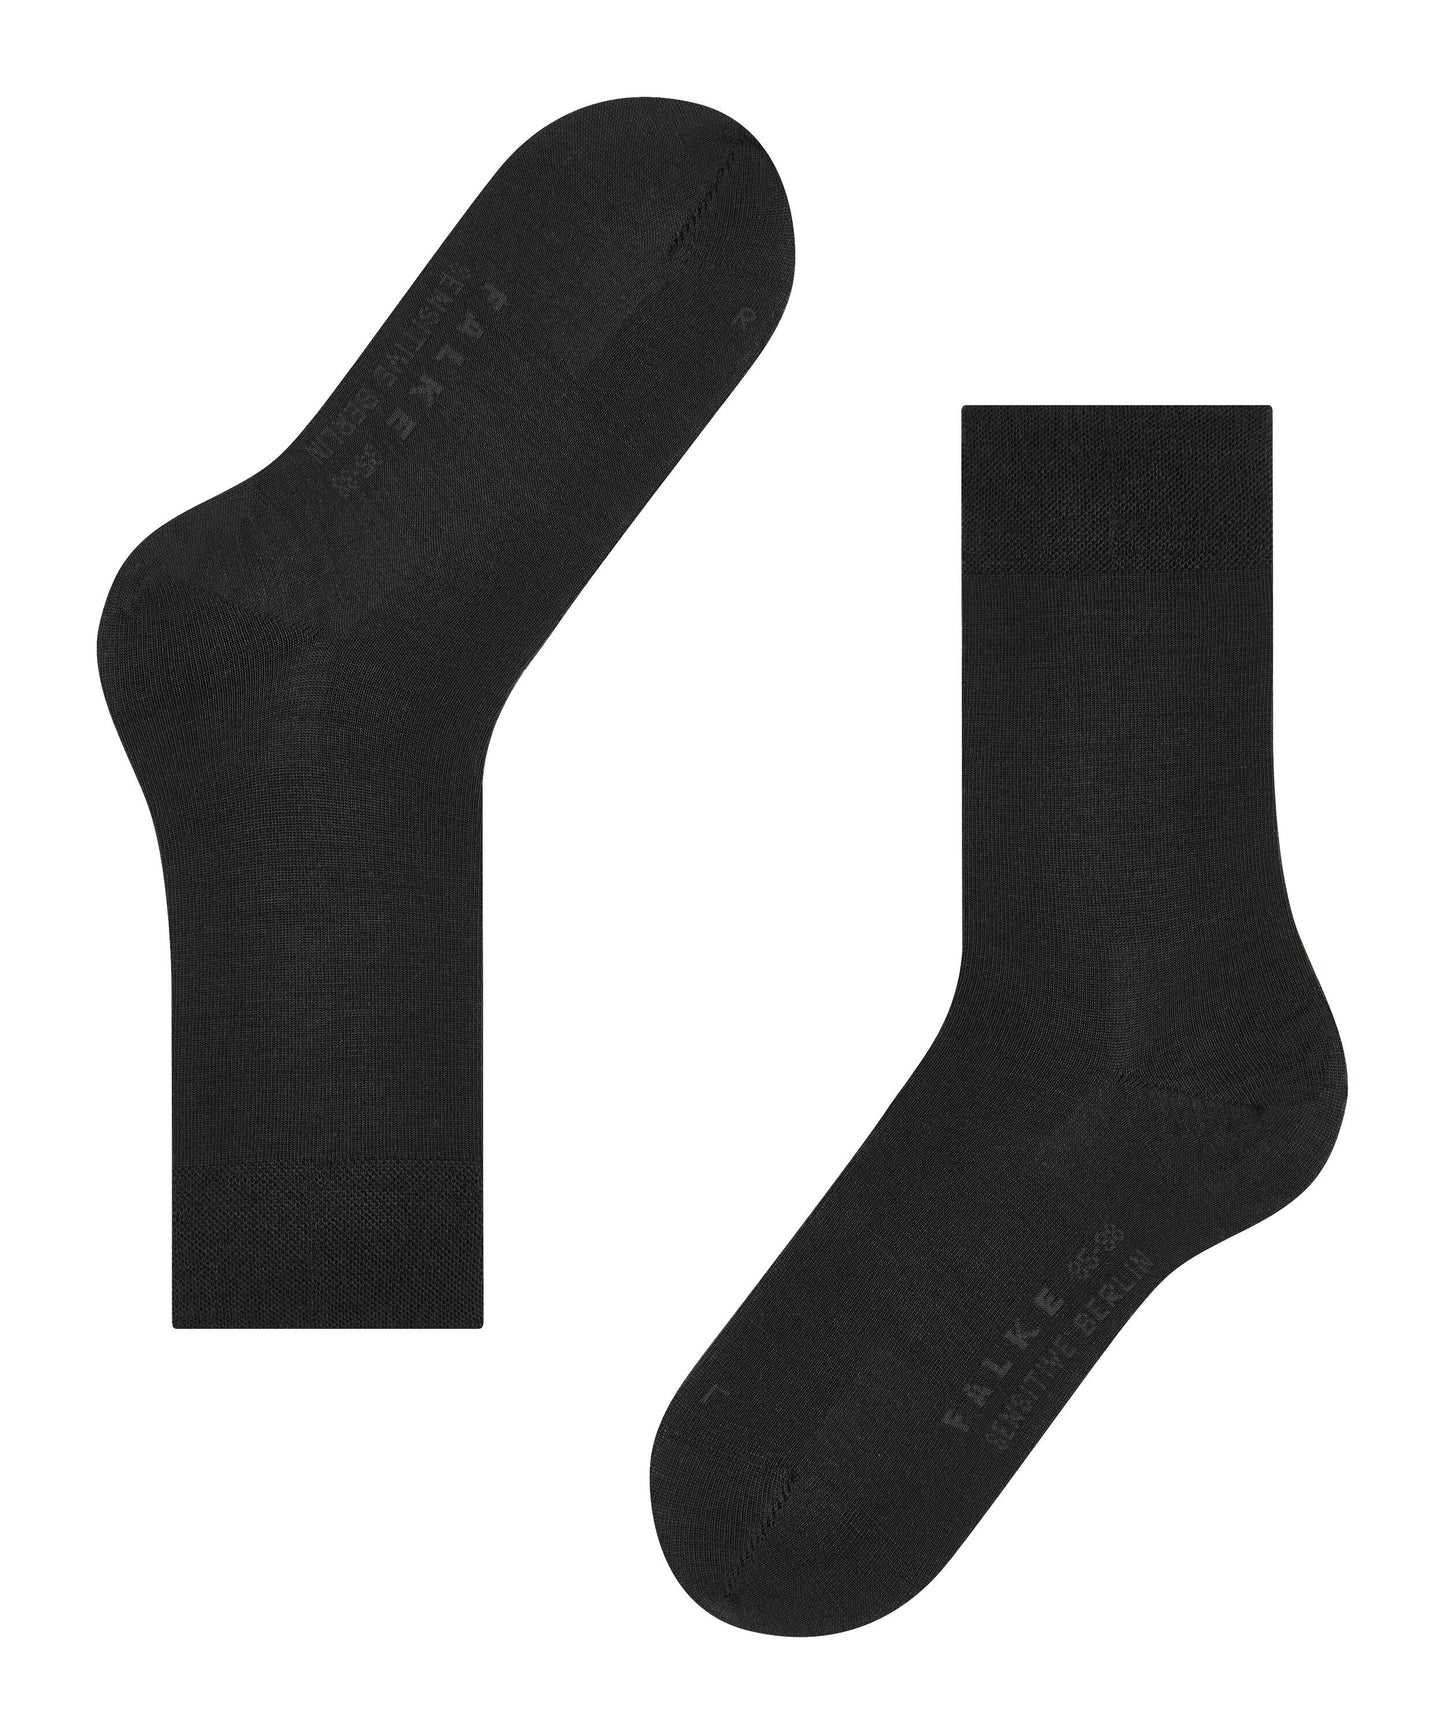 Socken Sensitive Berlin (Black)